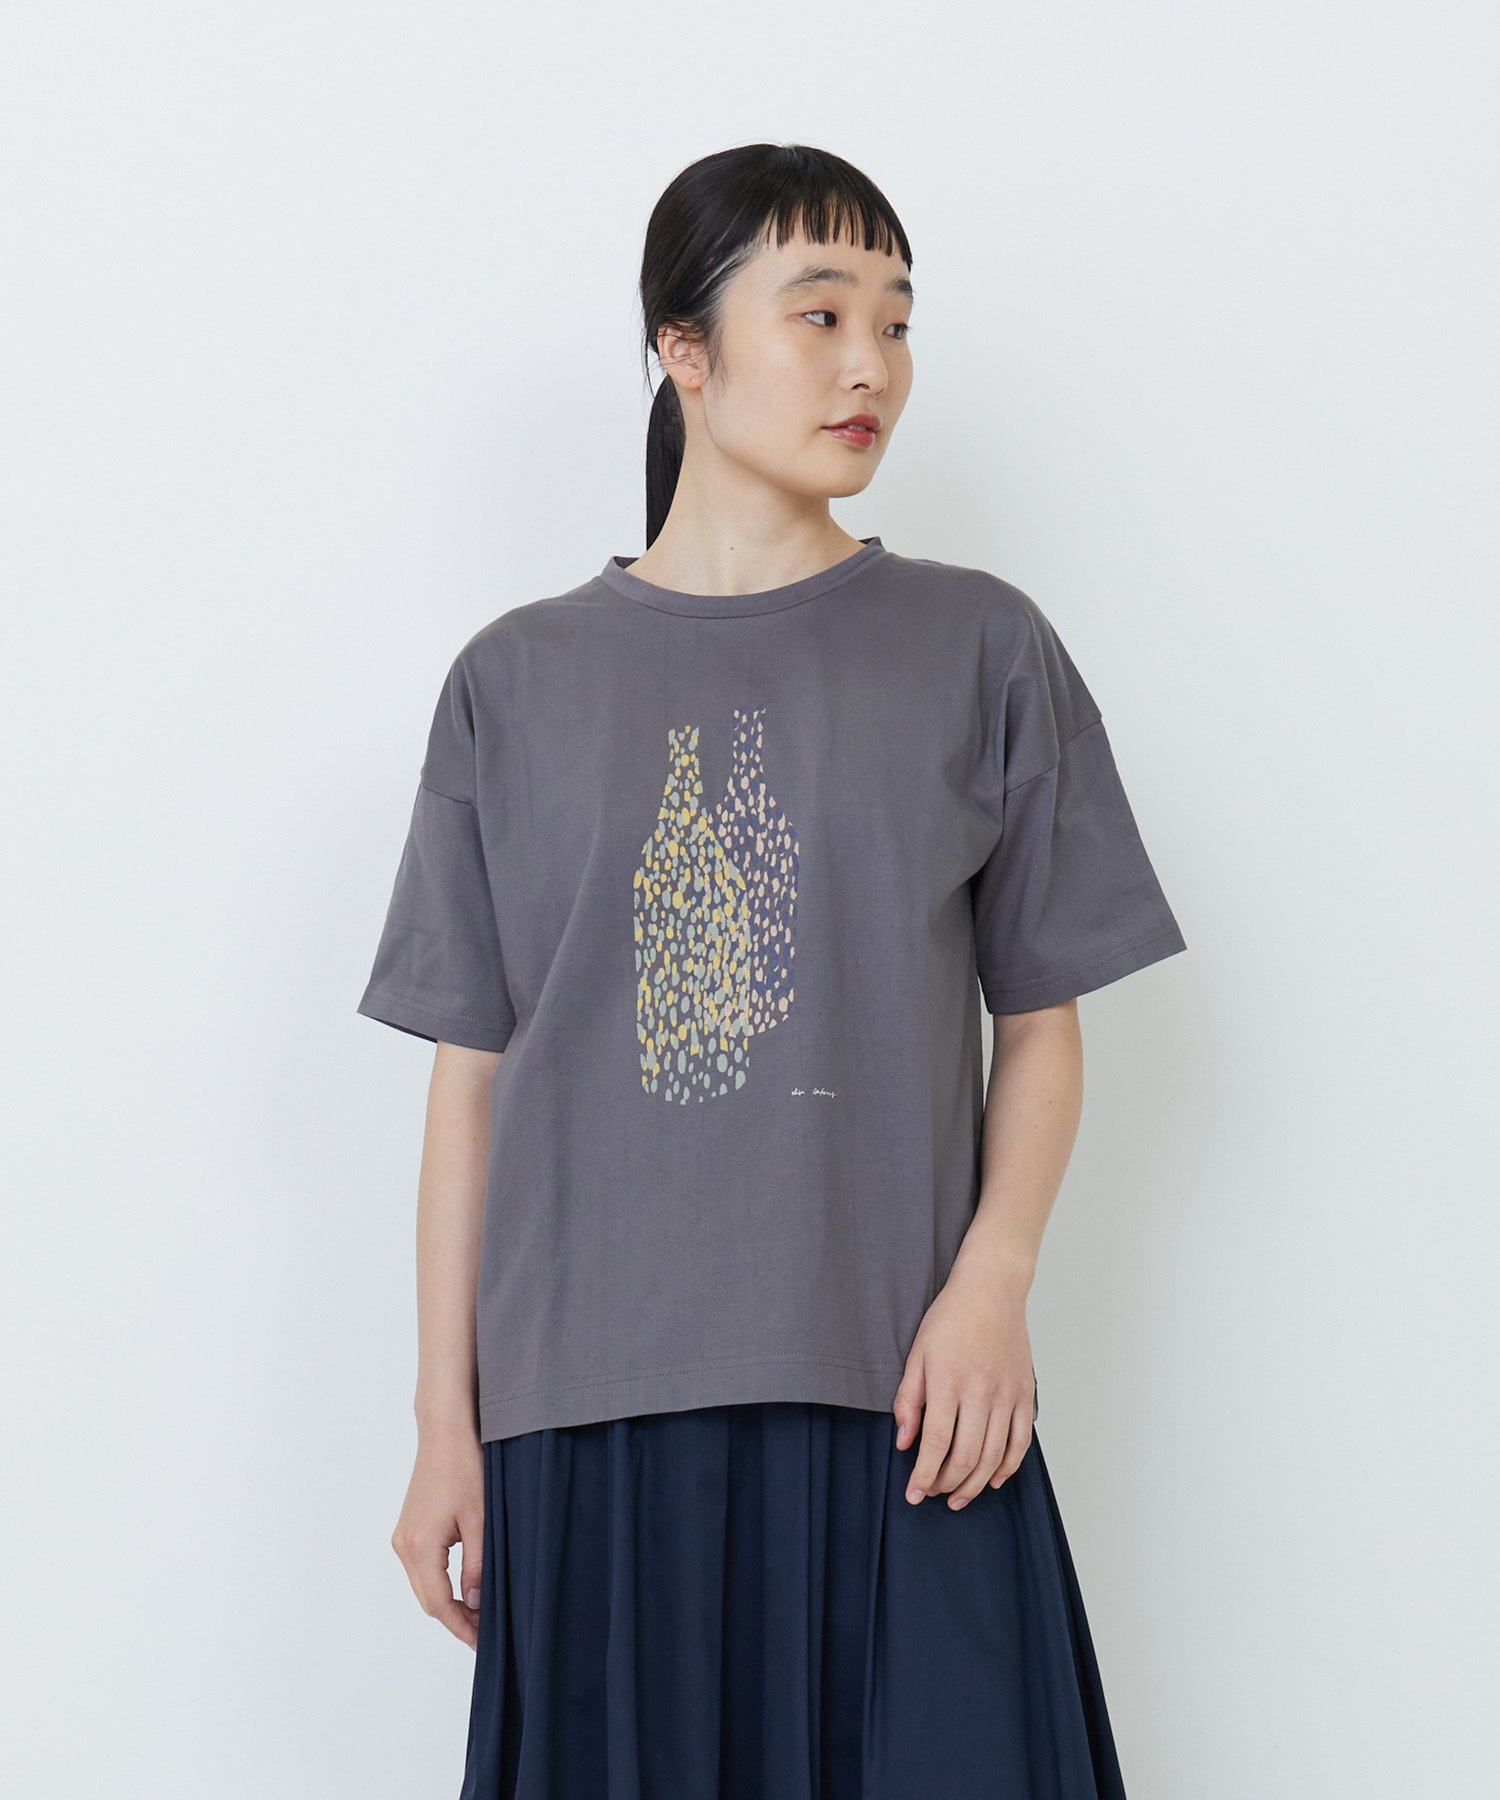 【LOISIR】【アーティストコラボ】PulloaプリントTシャツ 詳細画像 チャコールグレー 1